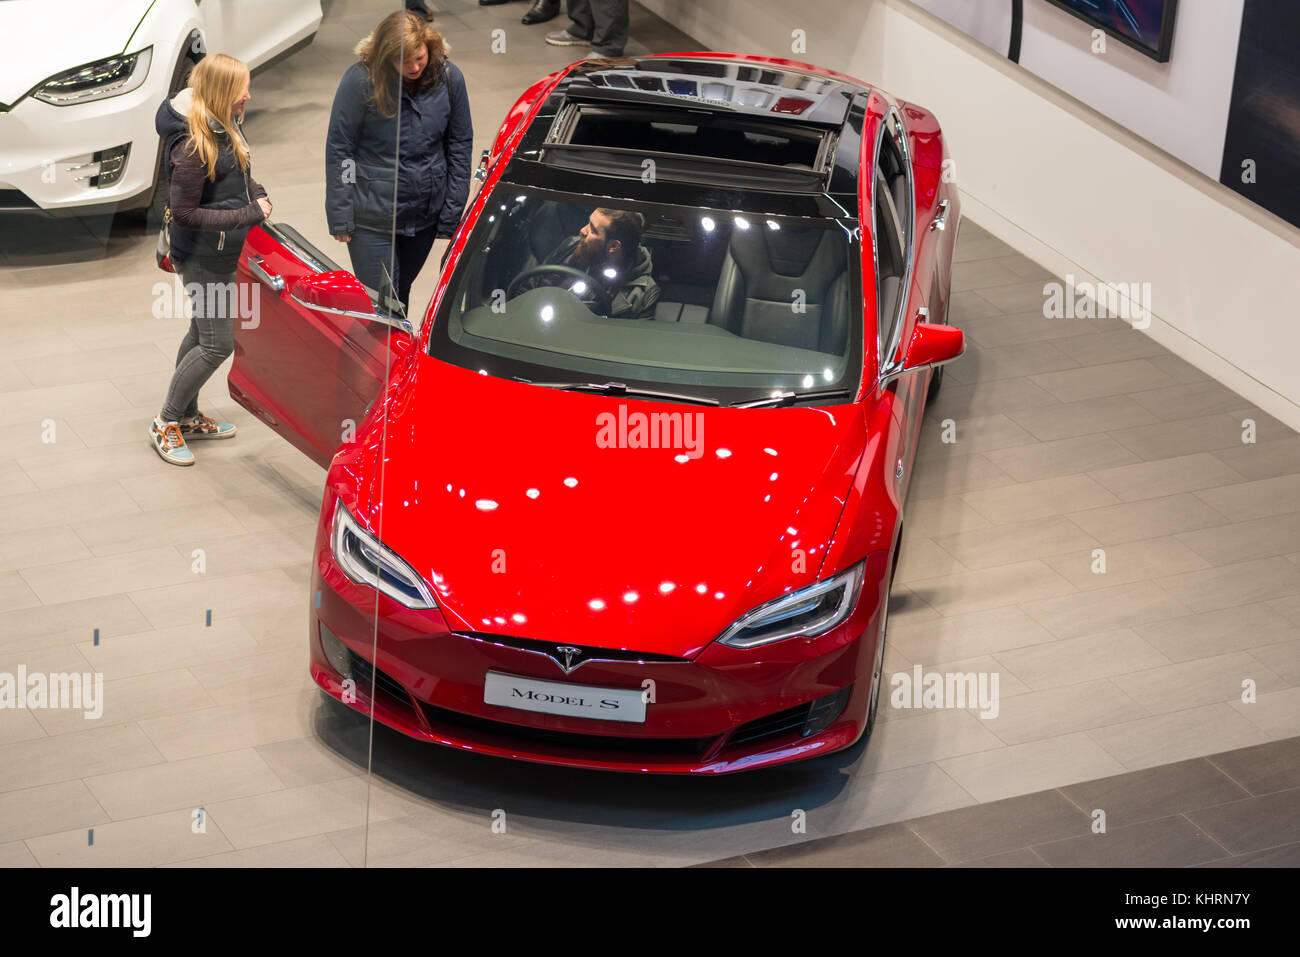 La Tesla Model S auto elettriche al salone di Le Grand Arcade Shopping Mall, Cambridge, Inghilterra, Regno Unito. Foto Stock